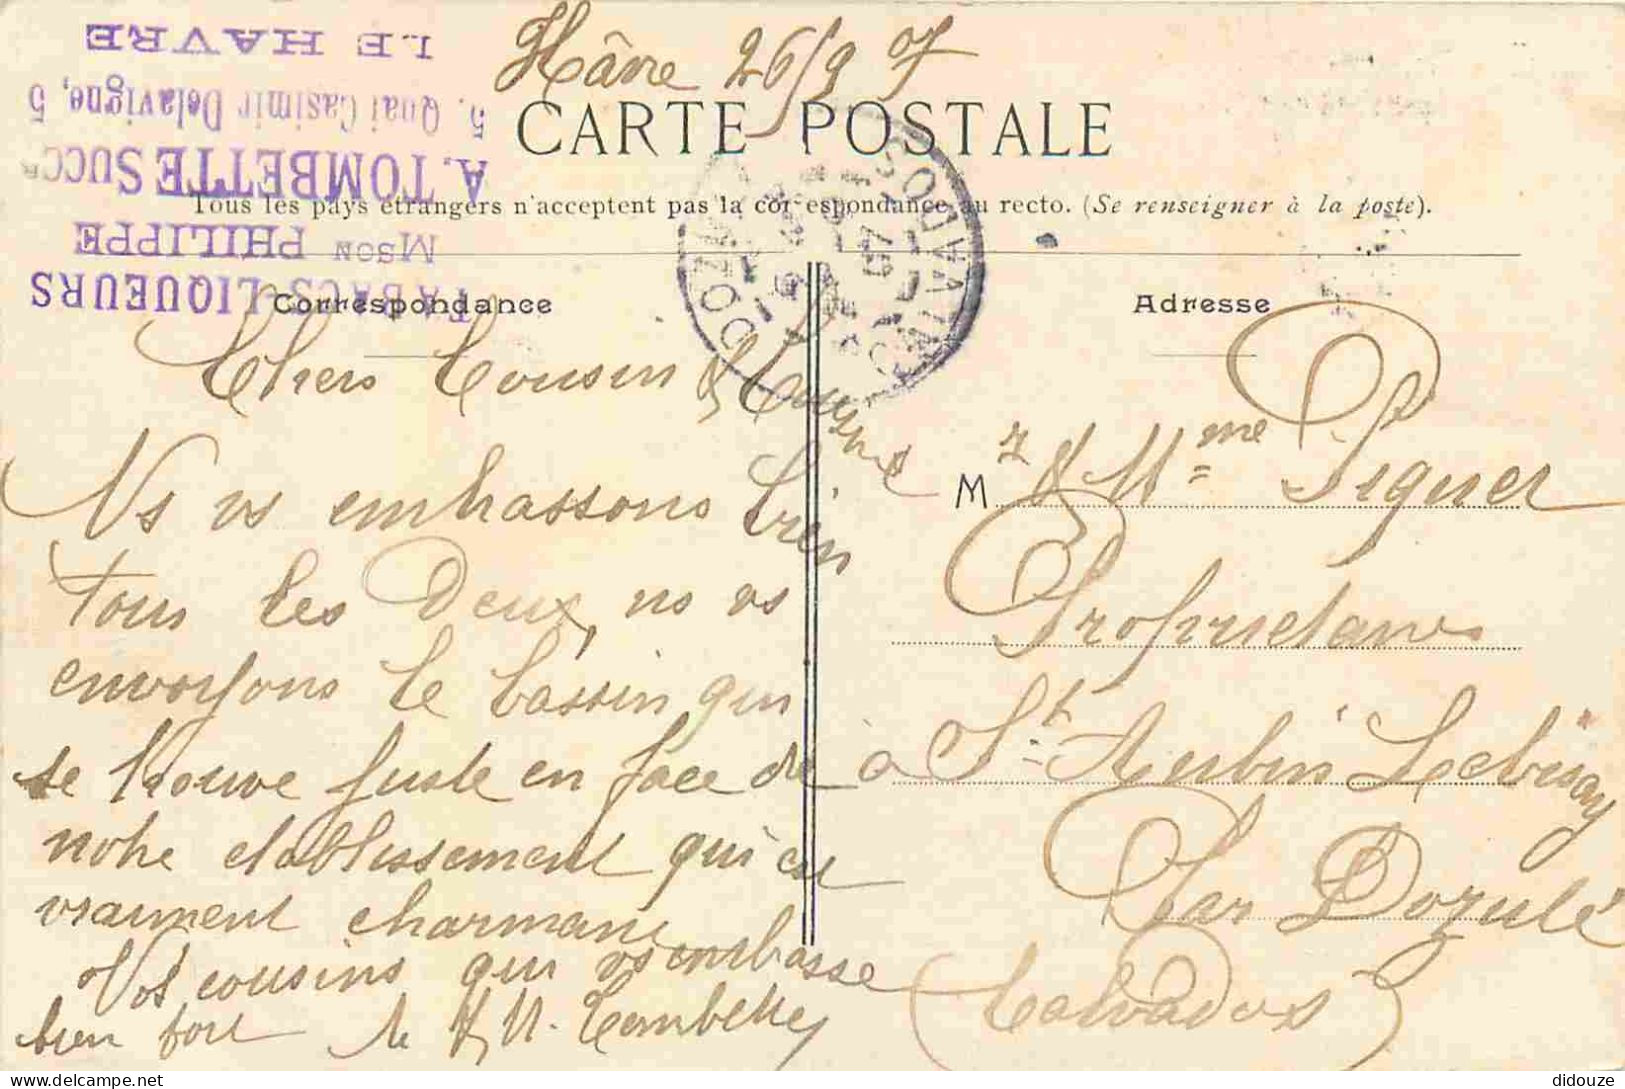 76 - Le Havre - Bassin De La Barre - Animée - Bateaux - Colorisée - Carte Gauffrée - CPA - Oblitération Ronde De 1907 -  - Port